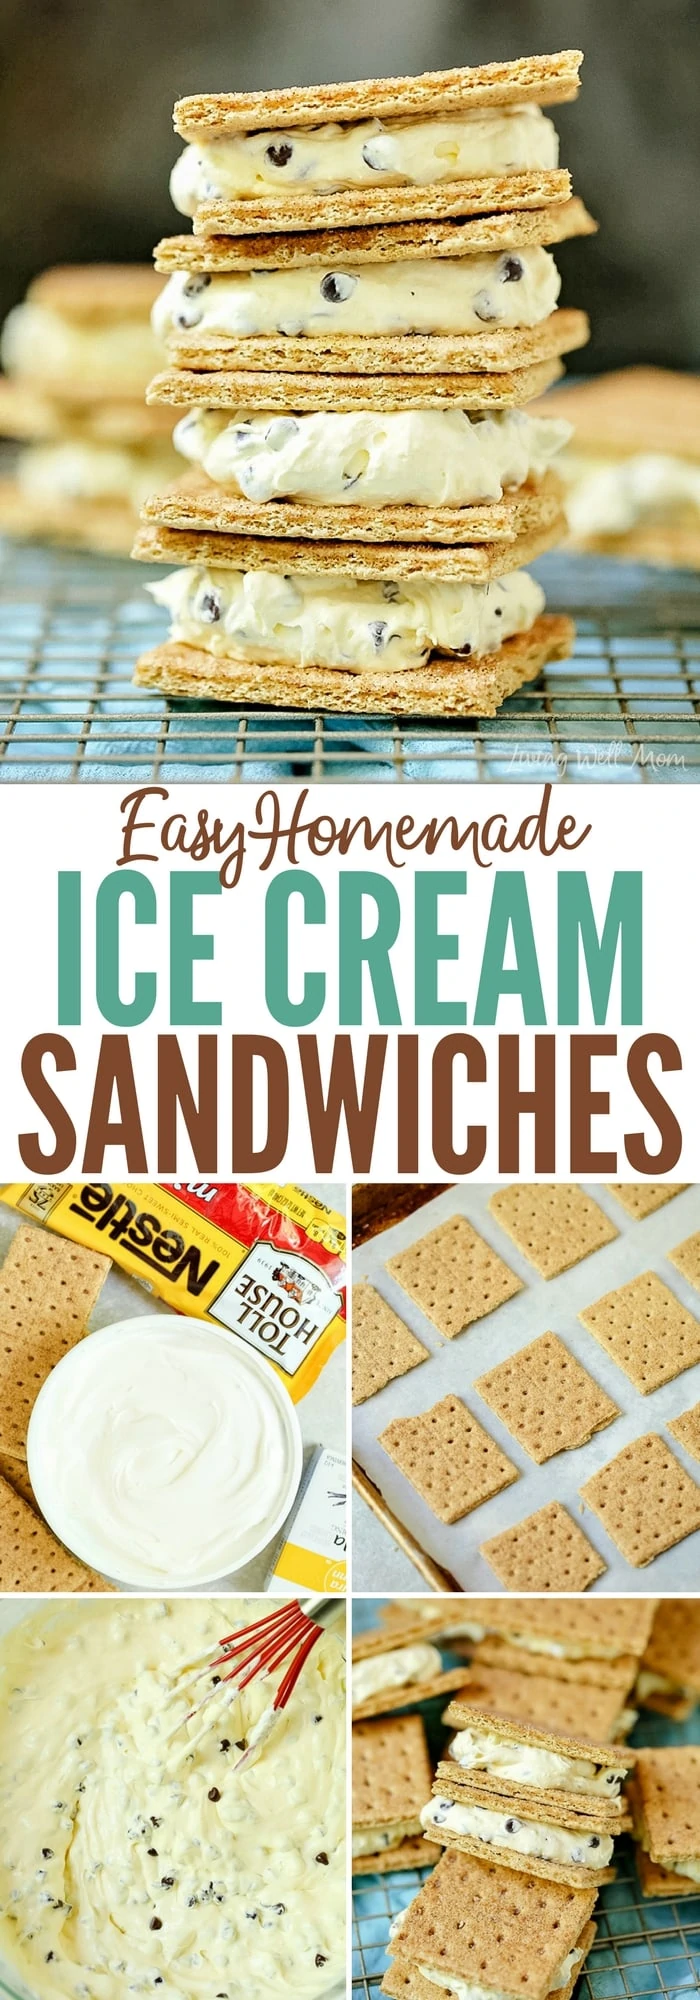 homemade graham cracker ice cream sandwiches recipe